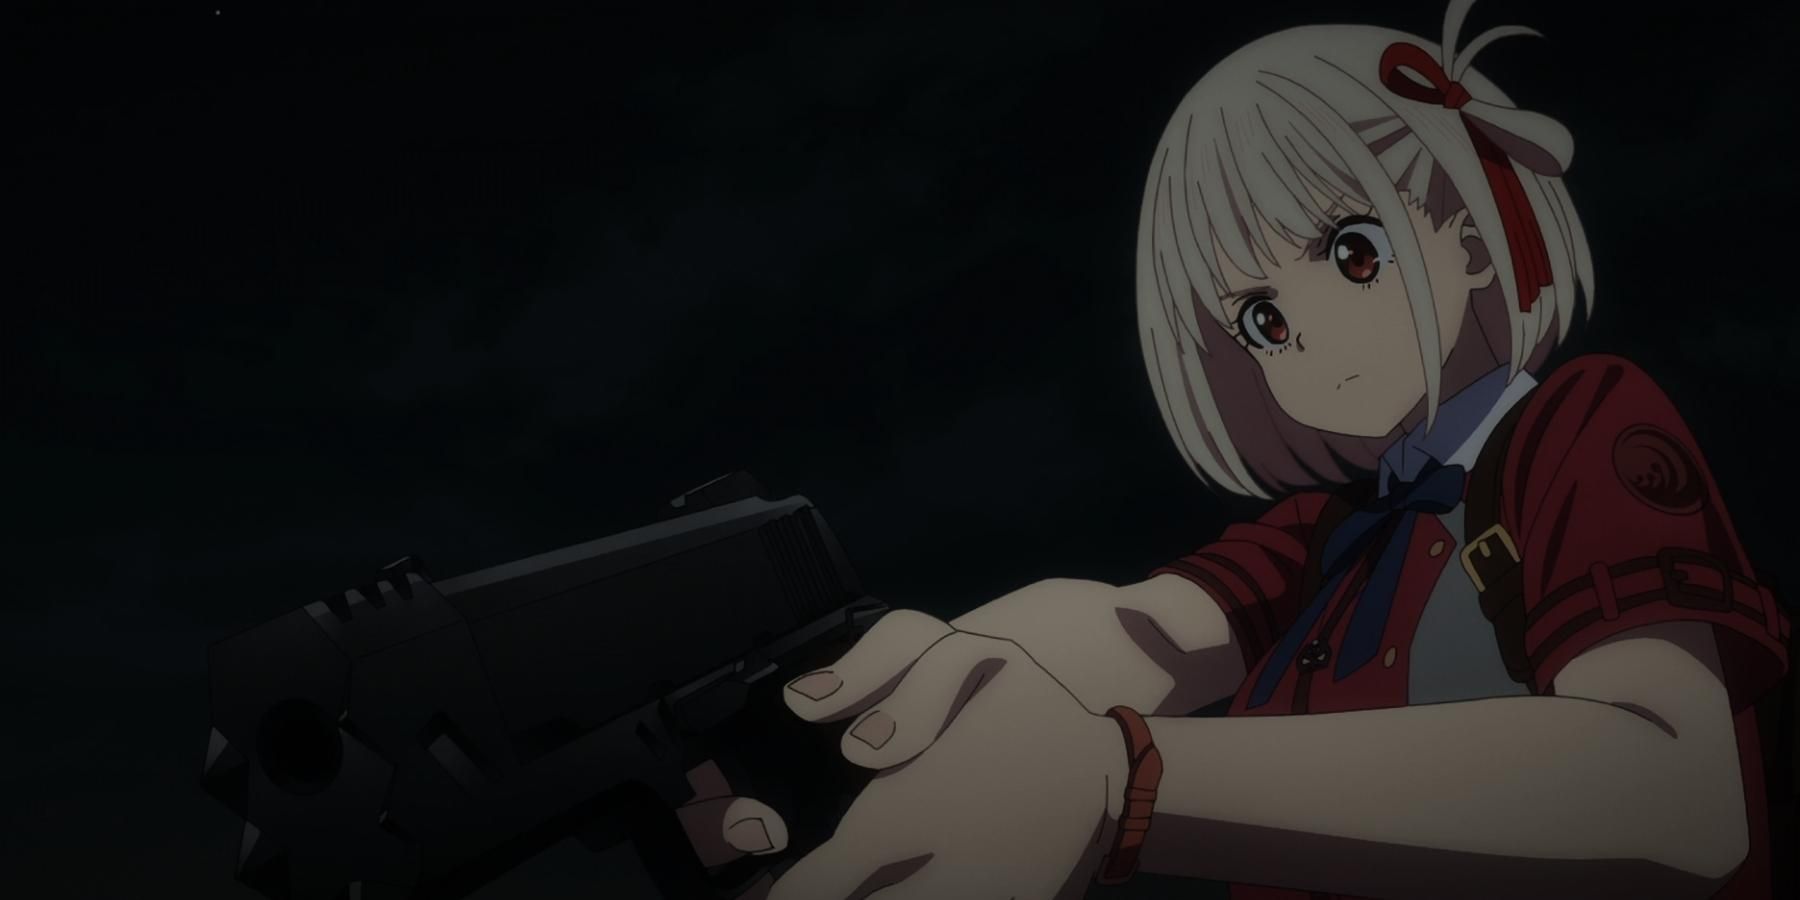 Tsurune: The Linking Shot (Season 2) Anime Gets New Trailer - Anime Corner